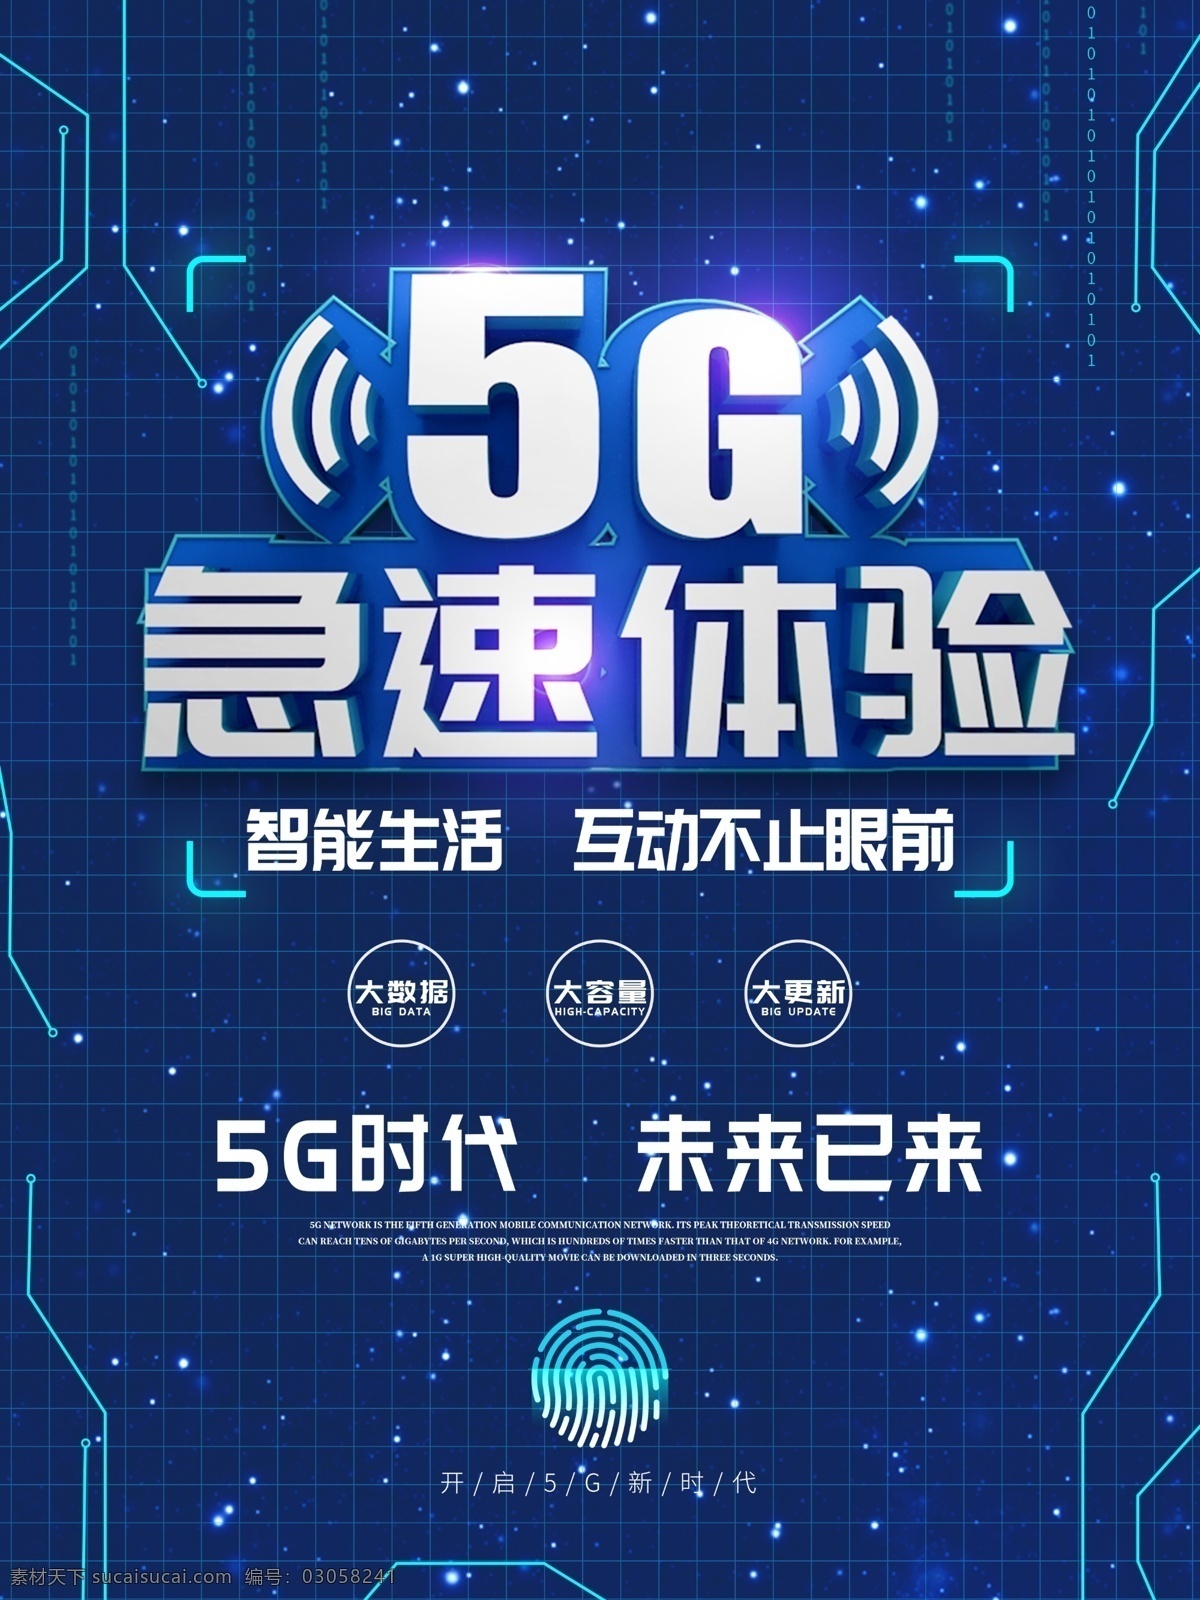 5g极速体验 5g展板 5g宣传展板 5g科技展板 科技展板 蓝色背景 5g